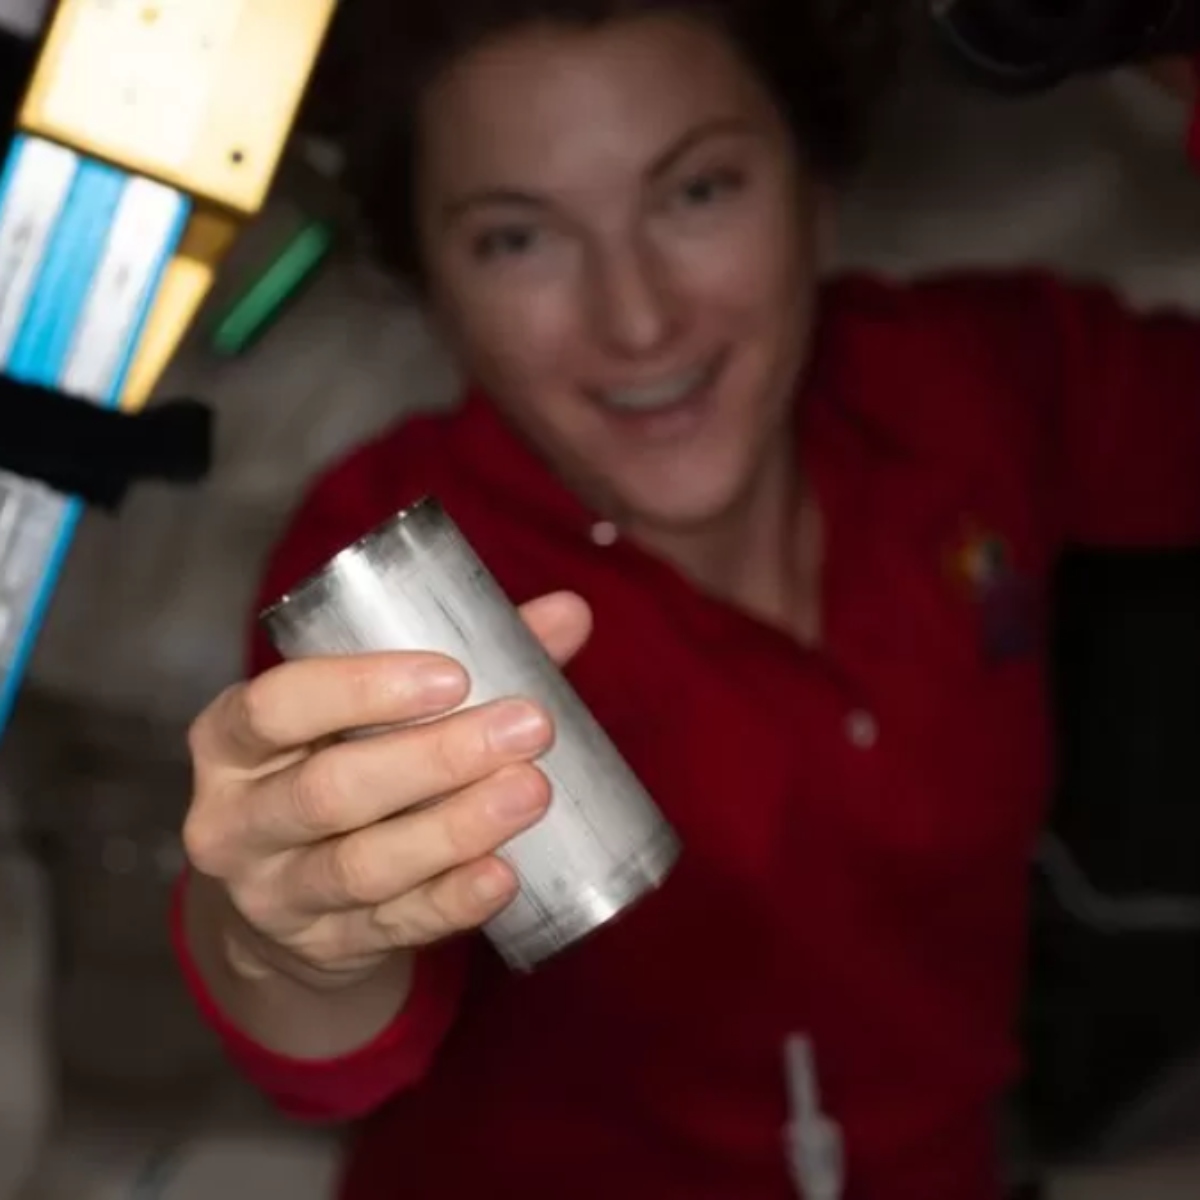  astronautas-nasa-bebem-xixi-reciclado 